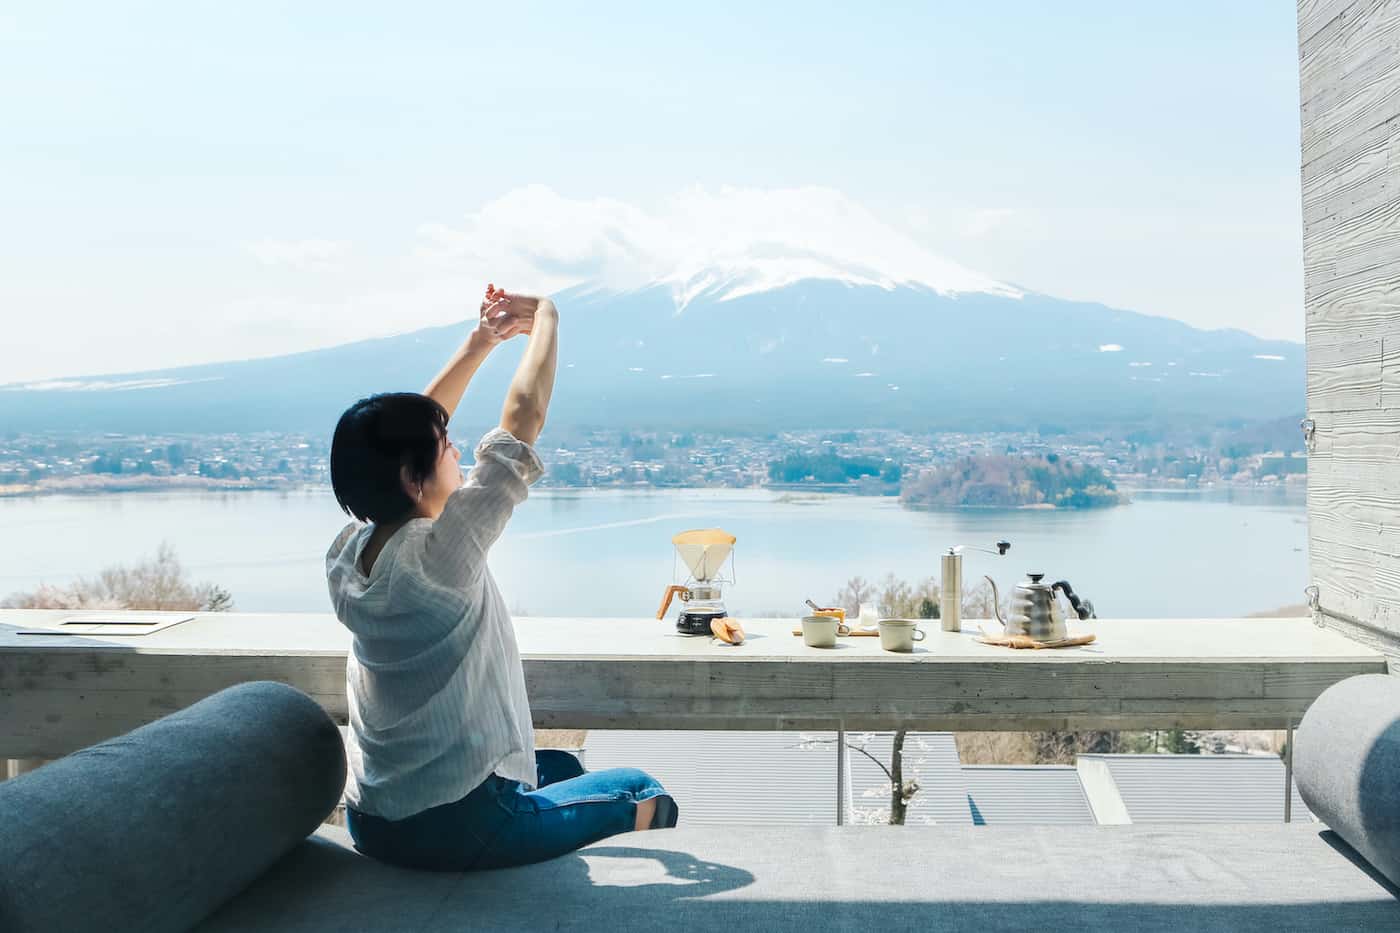 【星のや富士】3密のないグランピングリゾートでキャンプの醍醐味を味わう「富士山を眺め、森でリフレッシュするグランピングステイ」